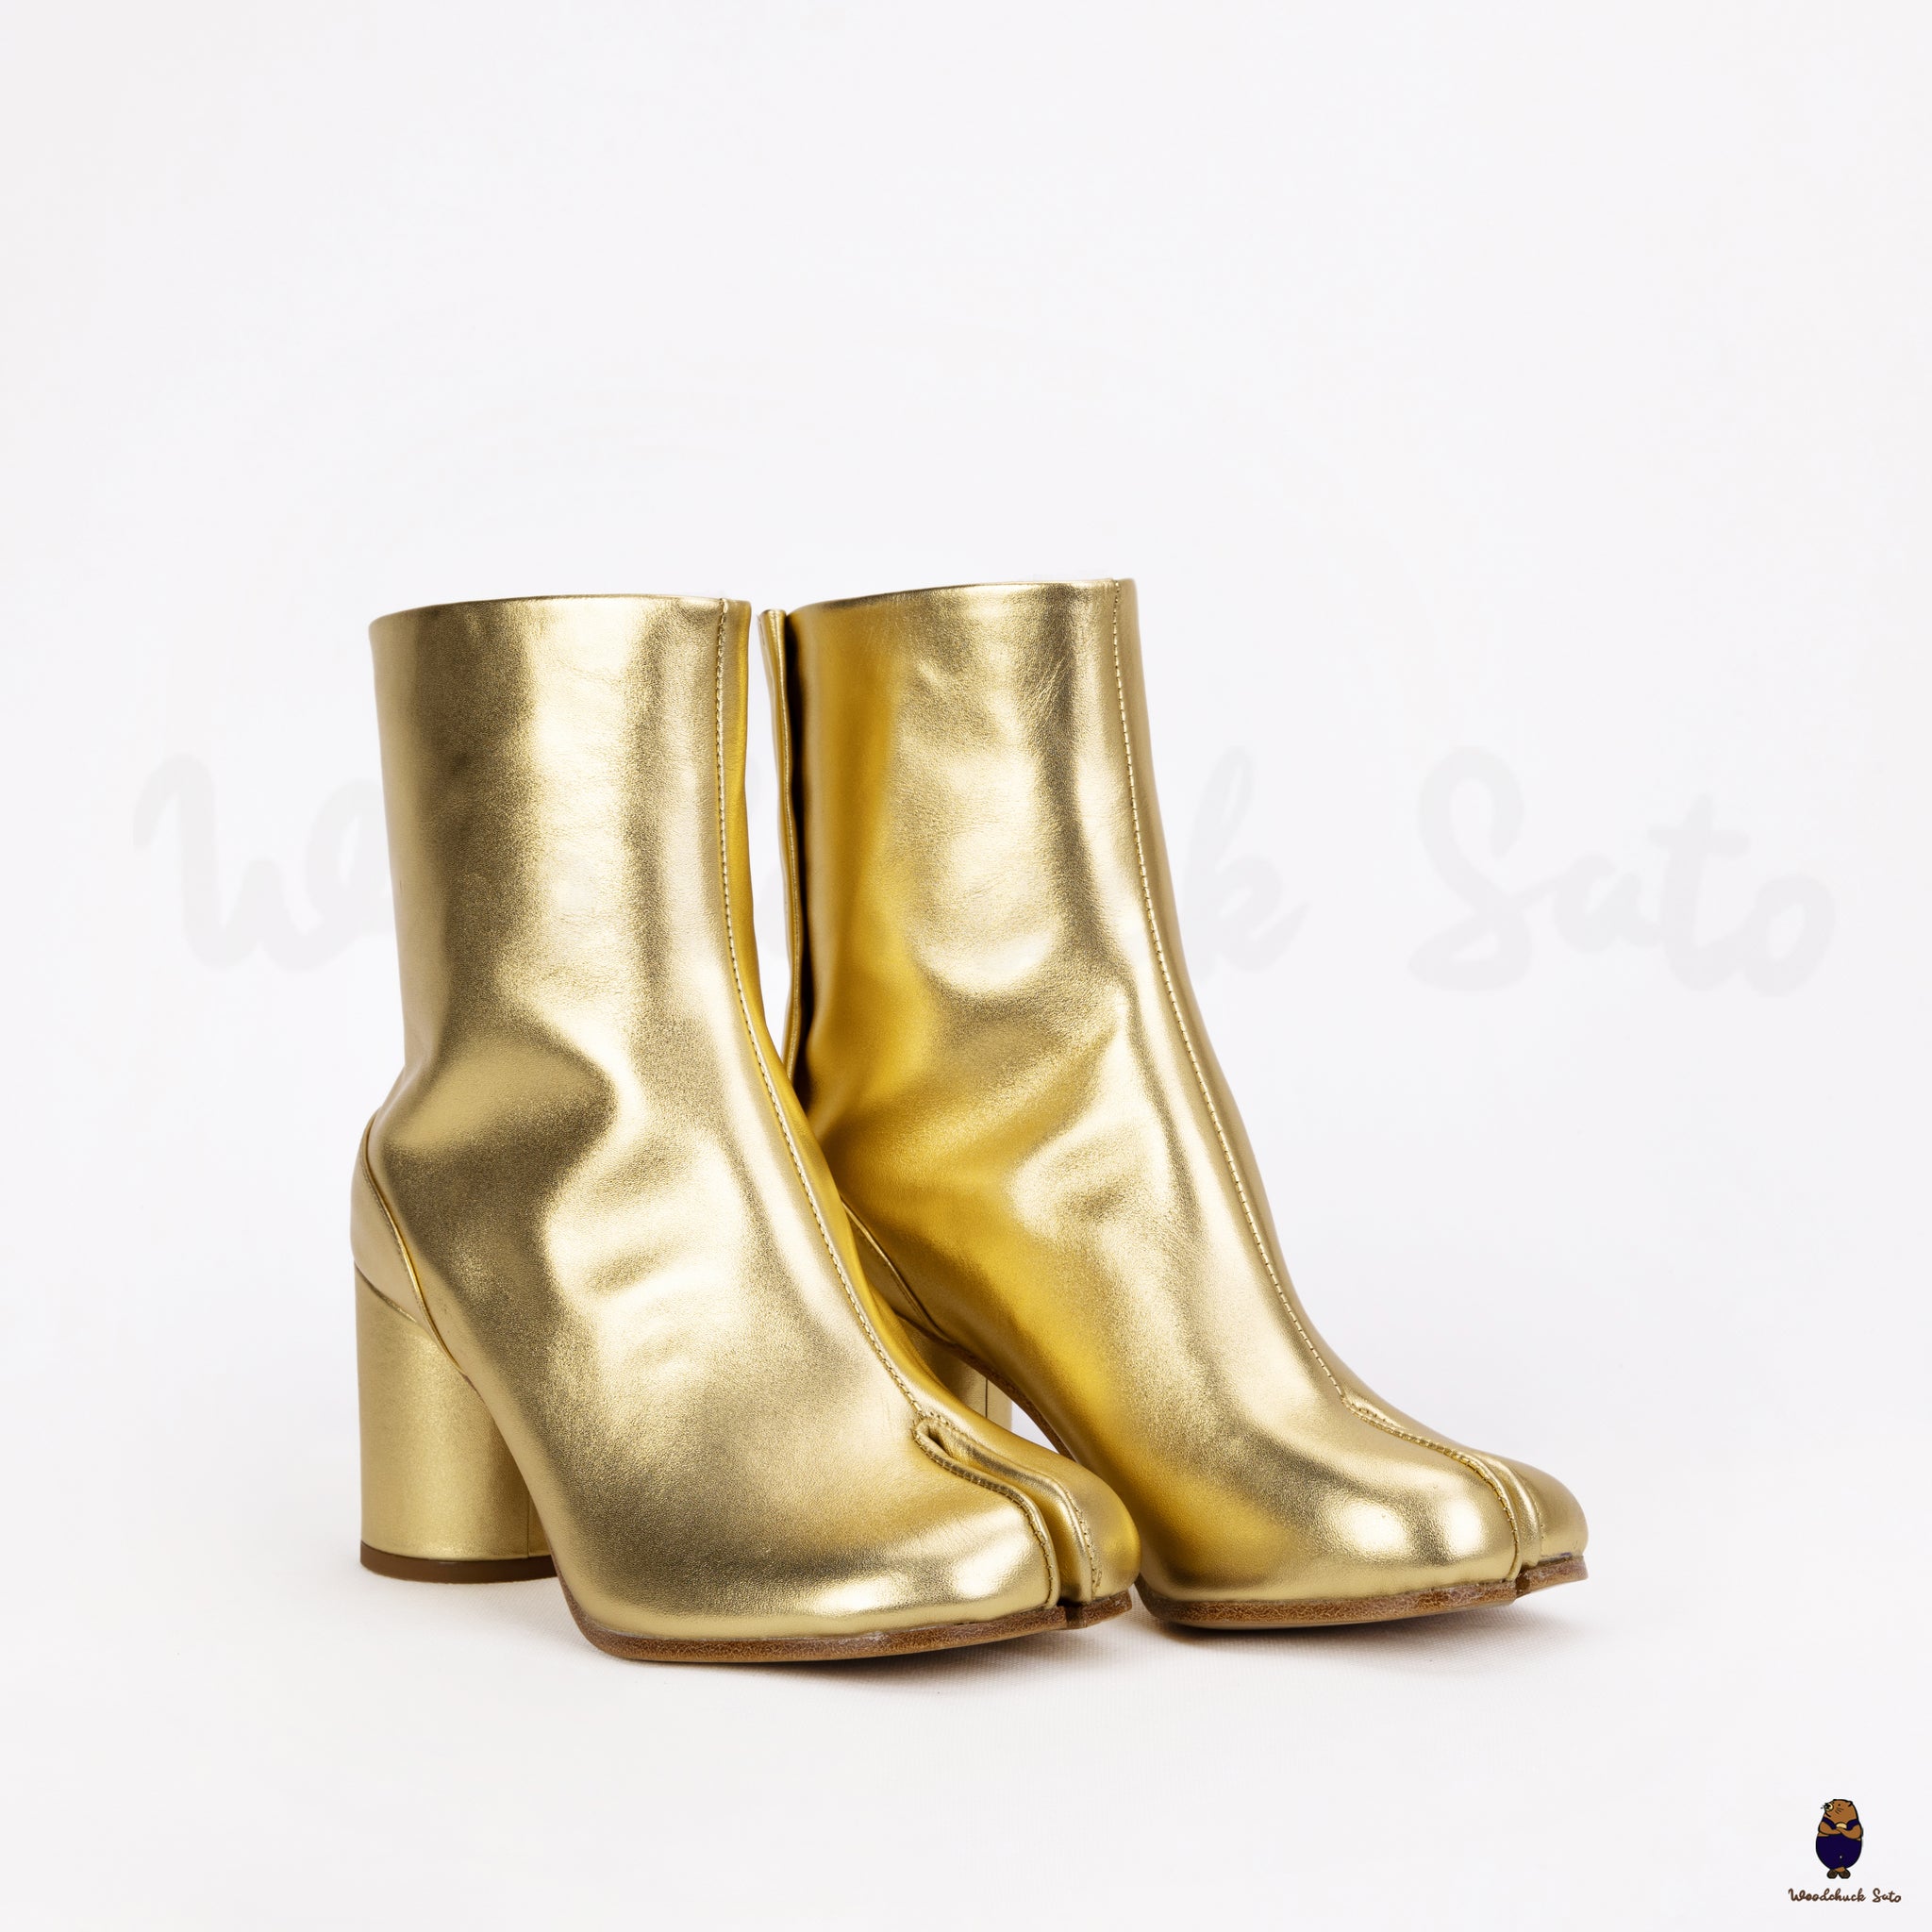 Goldene Tabi-Lederstiefel mit geteilter Zehenpartie für Herren und Damen, 8 cm Absatz, EU35–48